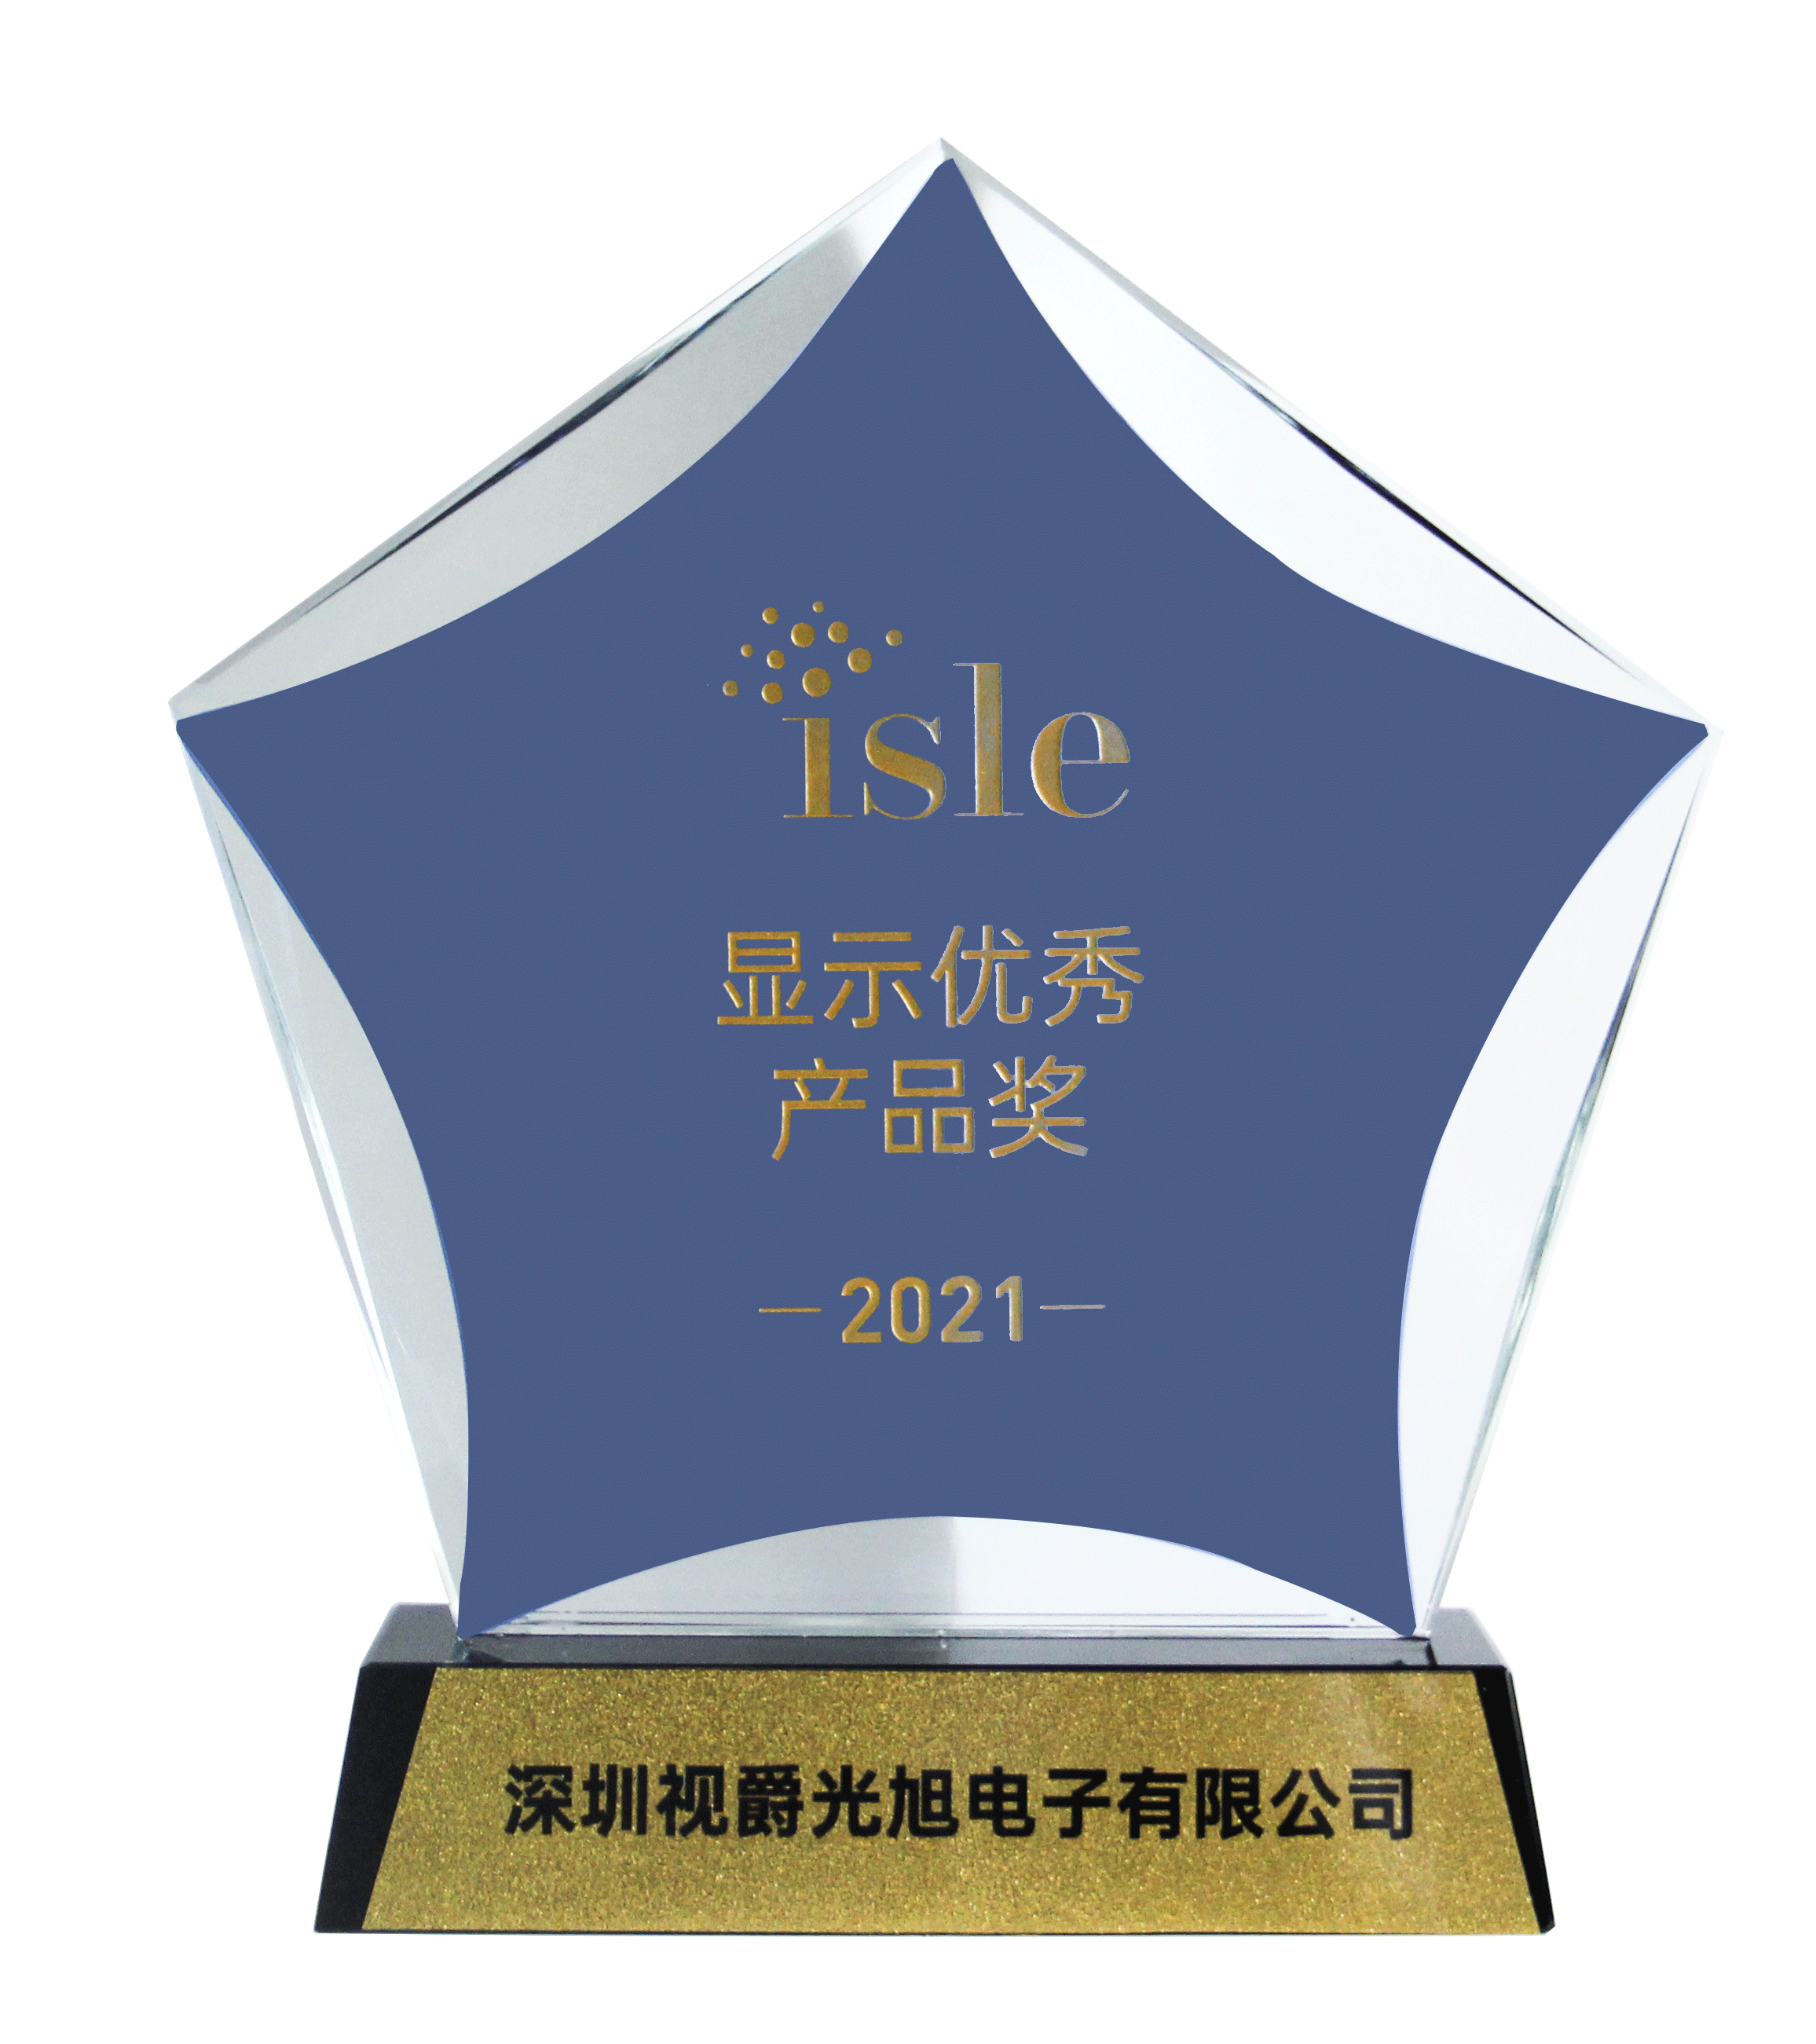 视爵光旭WL领航系列智慧灯杆屏荣获“ISLE 2021显示优秀产品奖”